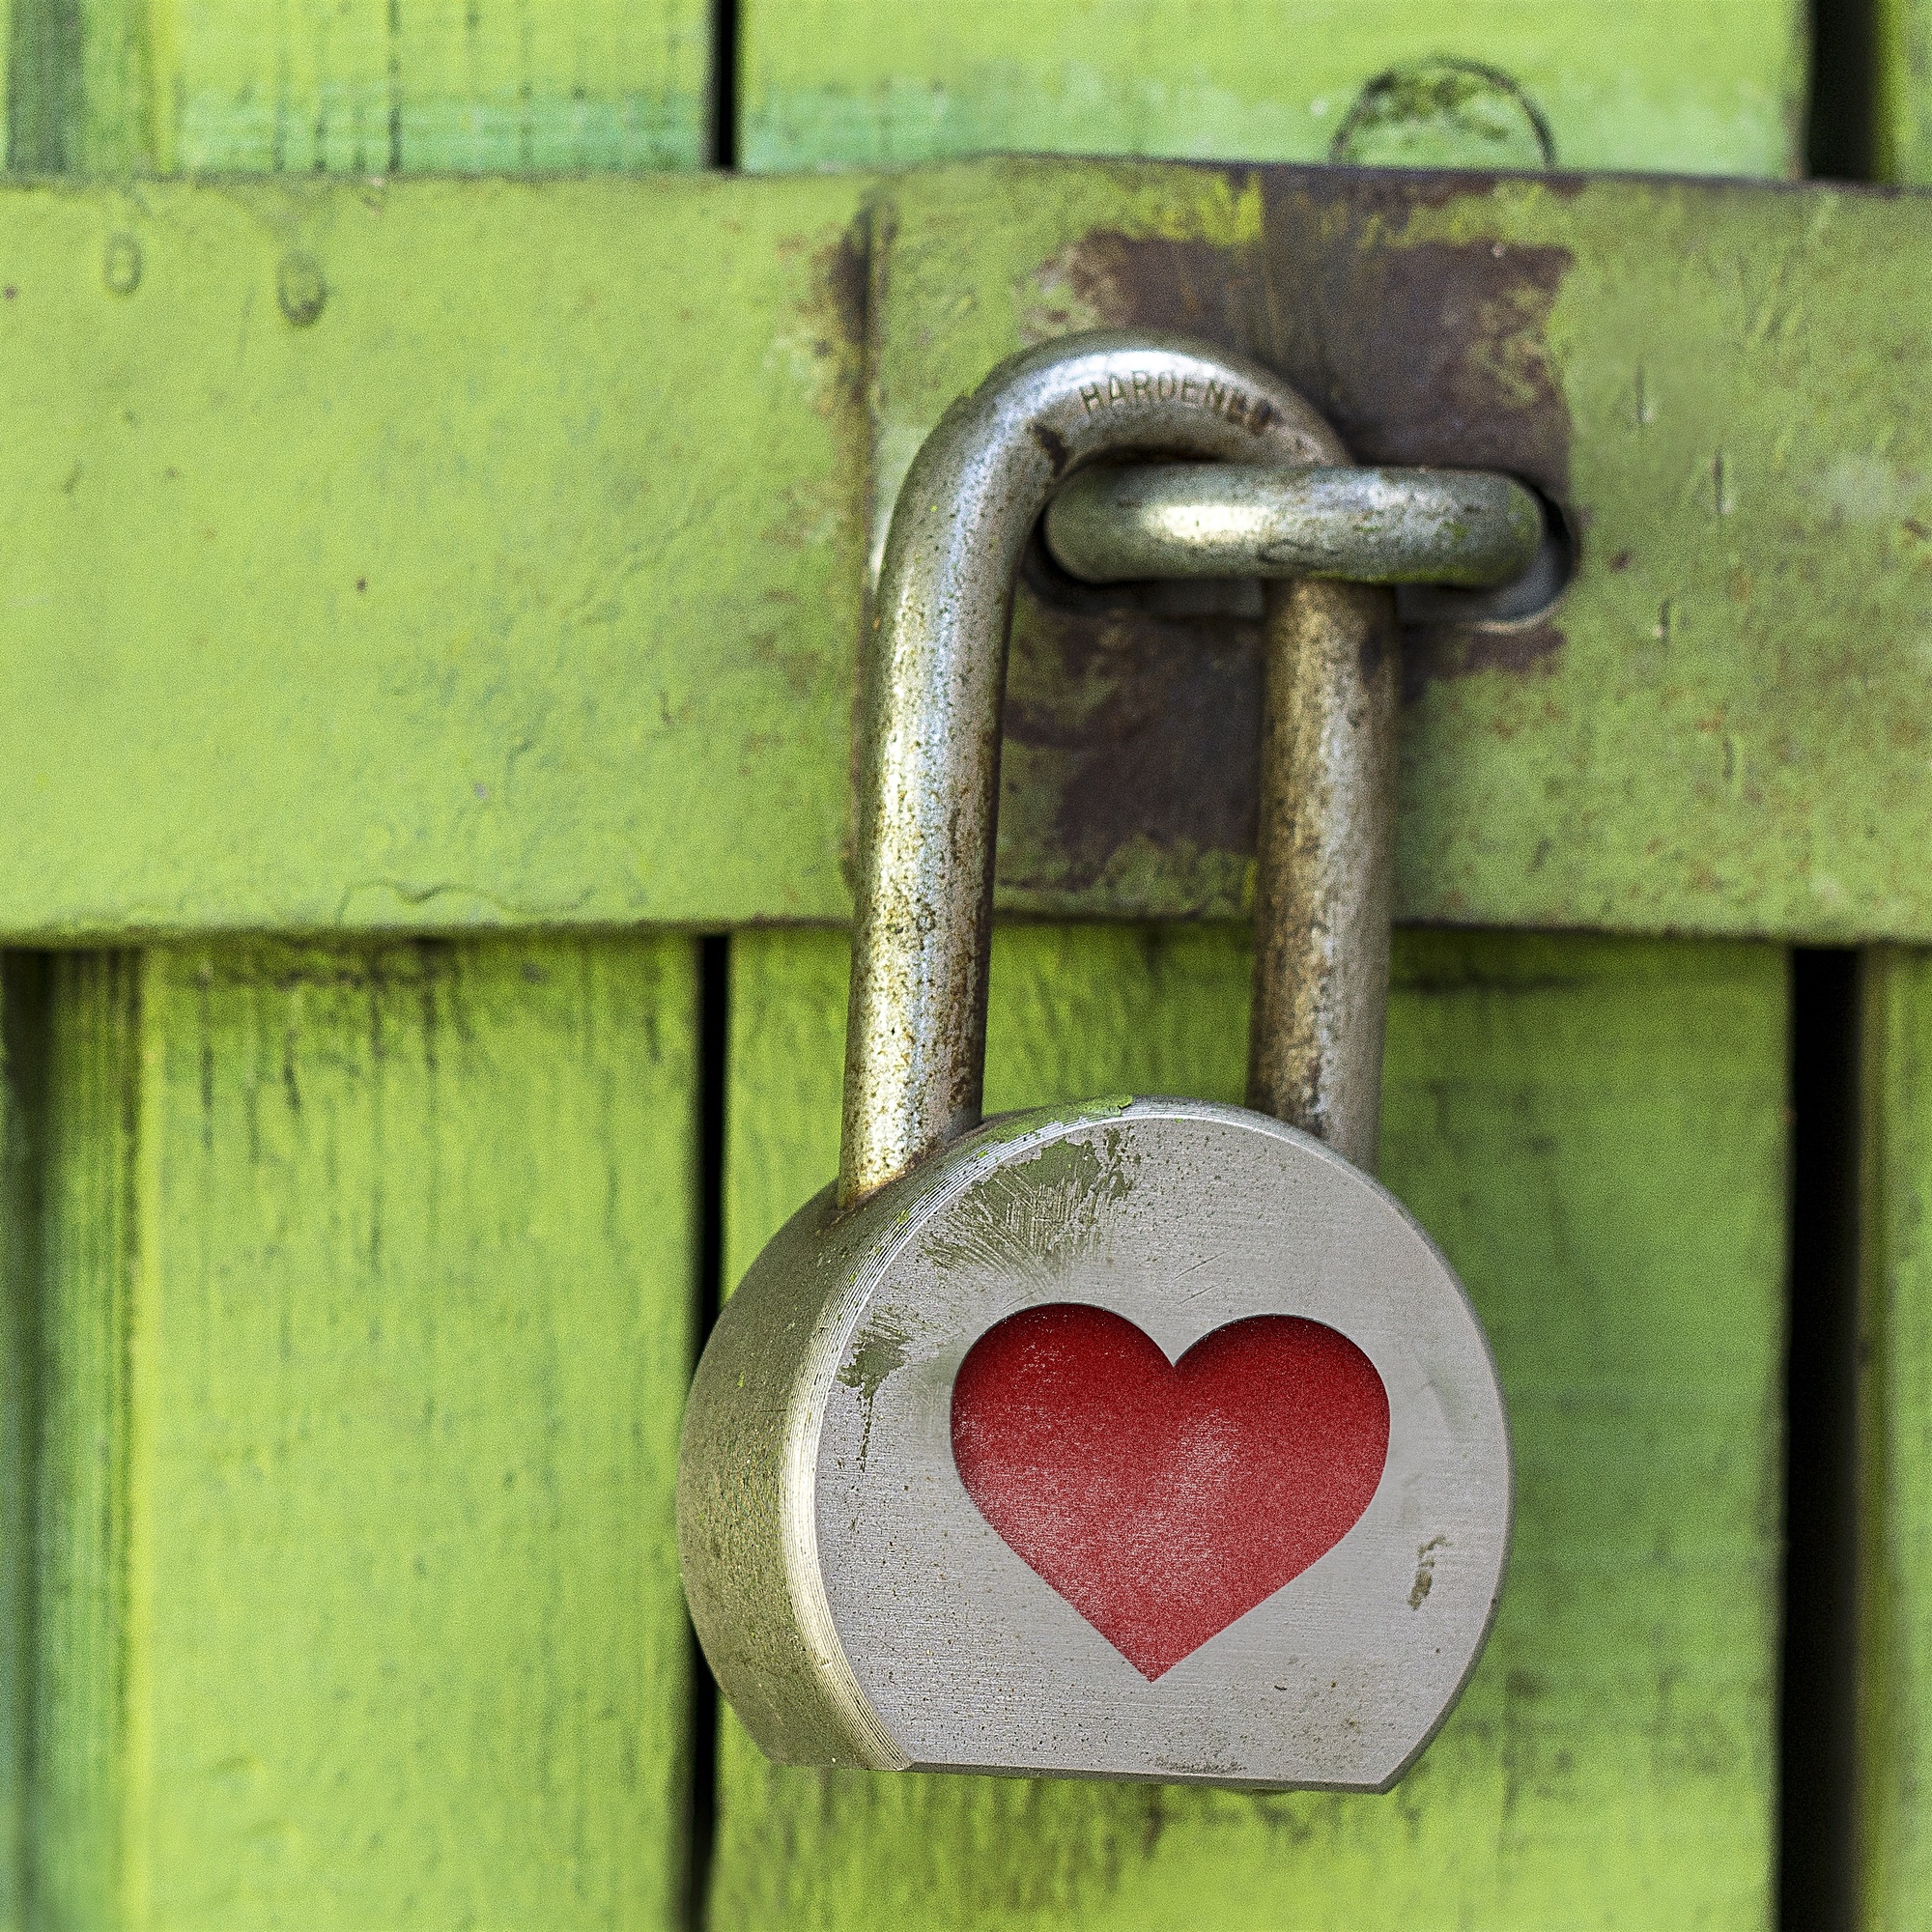 Foto: Vorhängeschloss mit einem roten Herz, das eine grüne Holztüre abschliesst